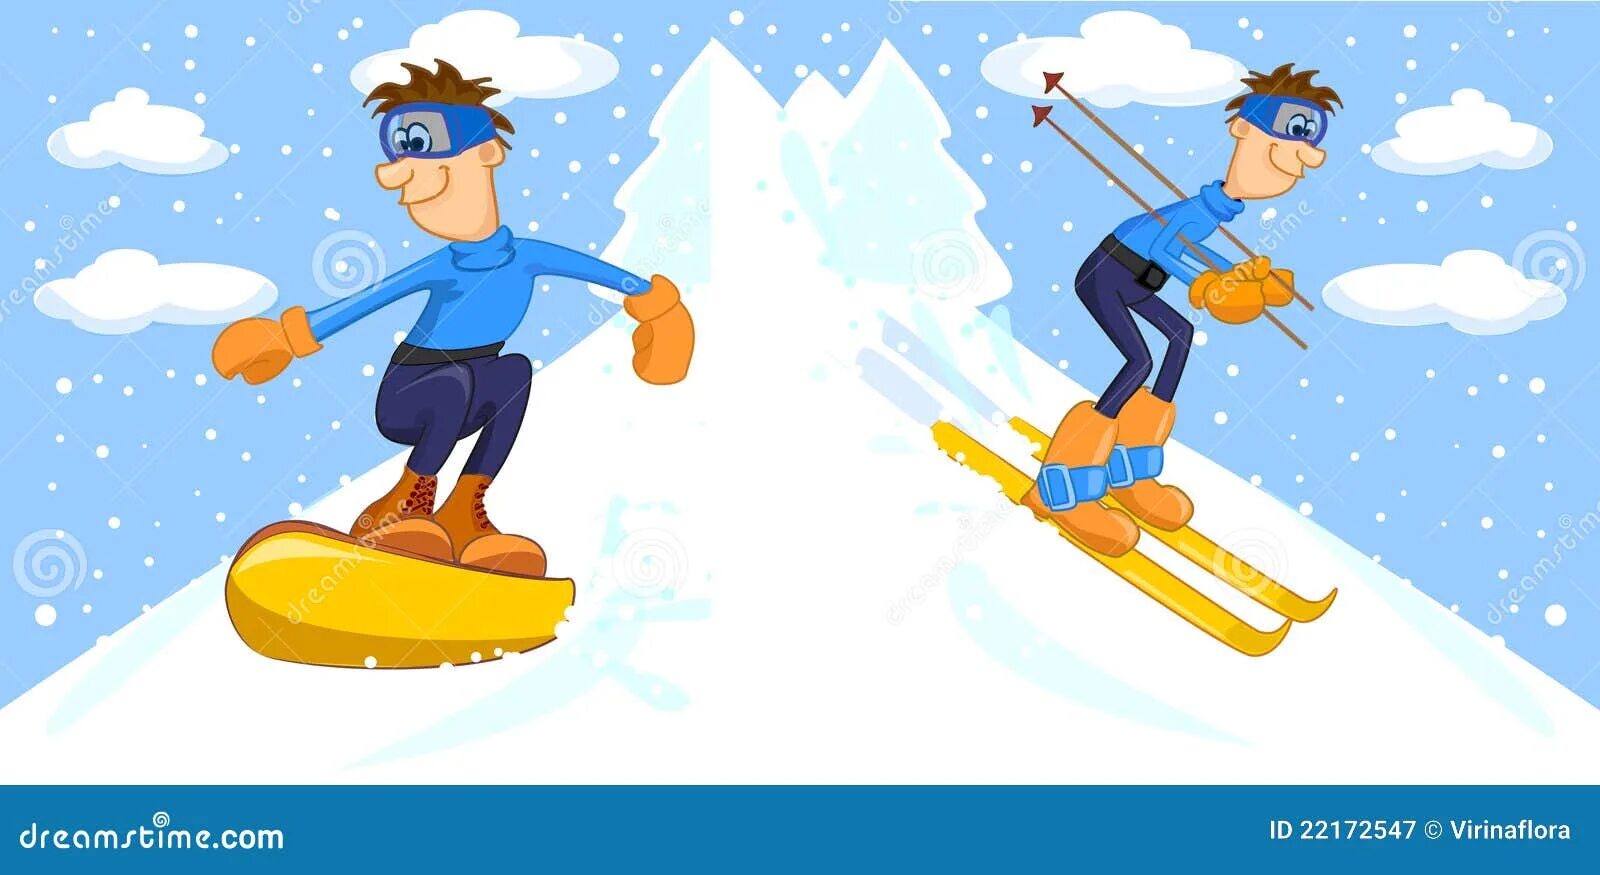 Туристу лыжнику было лень идти. Мальчик катается на лыжах. Мультяшка на лыжах. Сноуборд для дошкольников. Люди катаются на лыжах.